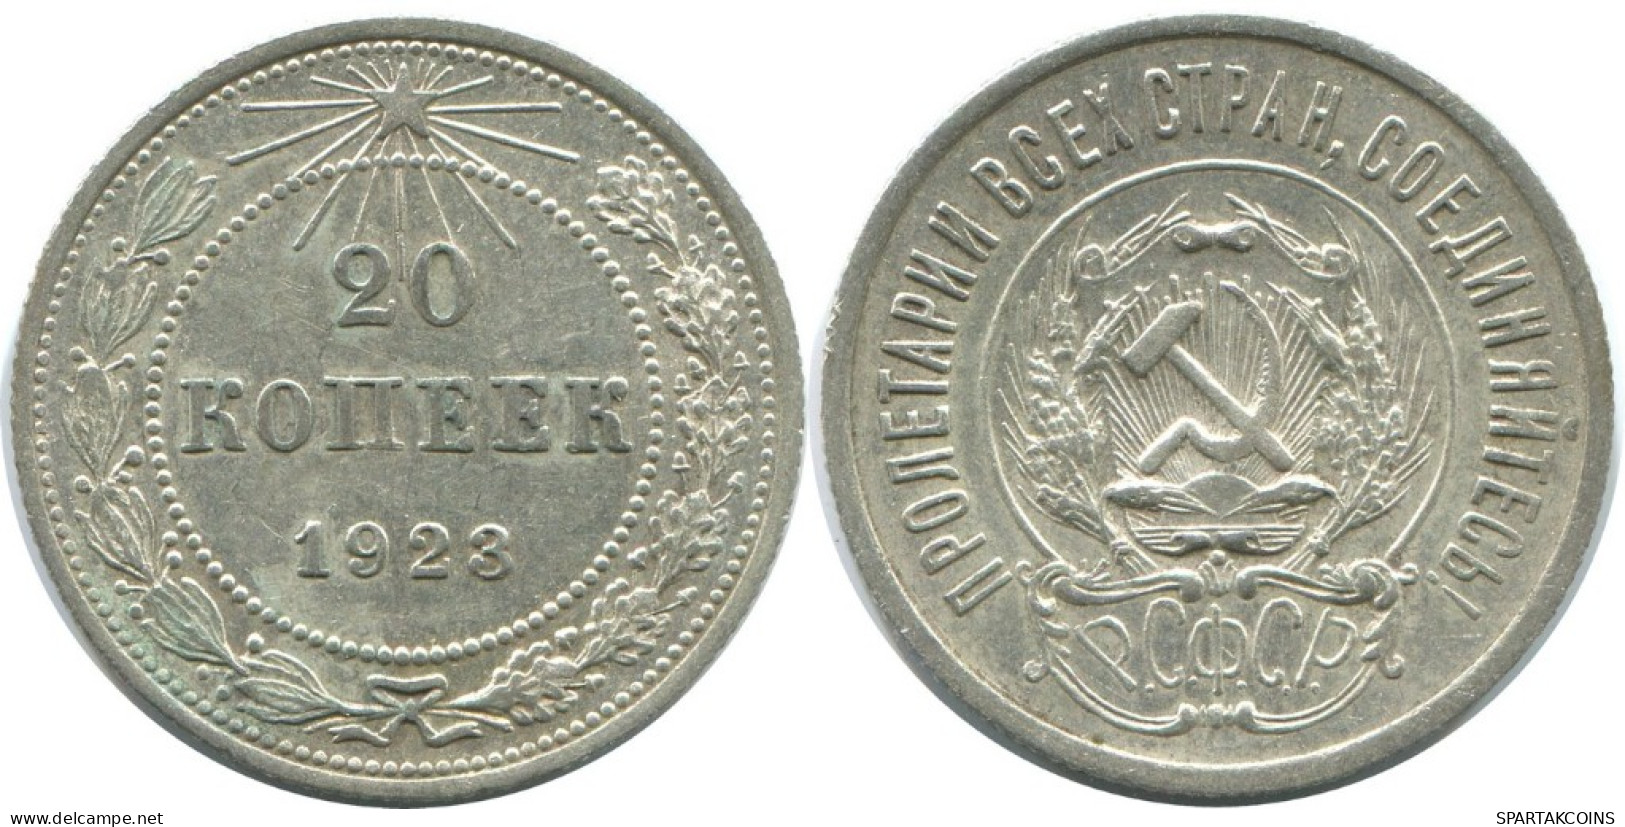 20 KOPEKS 1923 RUSSIA RSFSR SILVER Coin HIGH GRADE #AF445.4.U.A - Russland